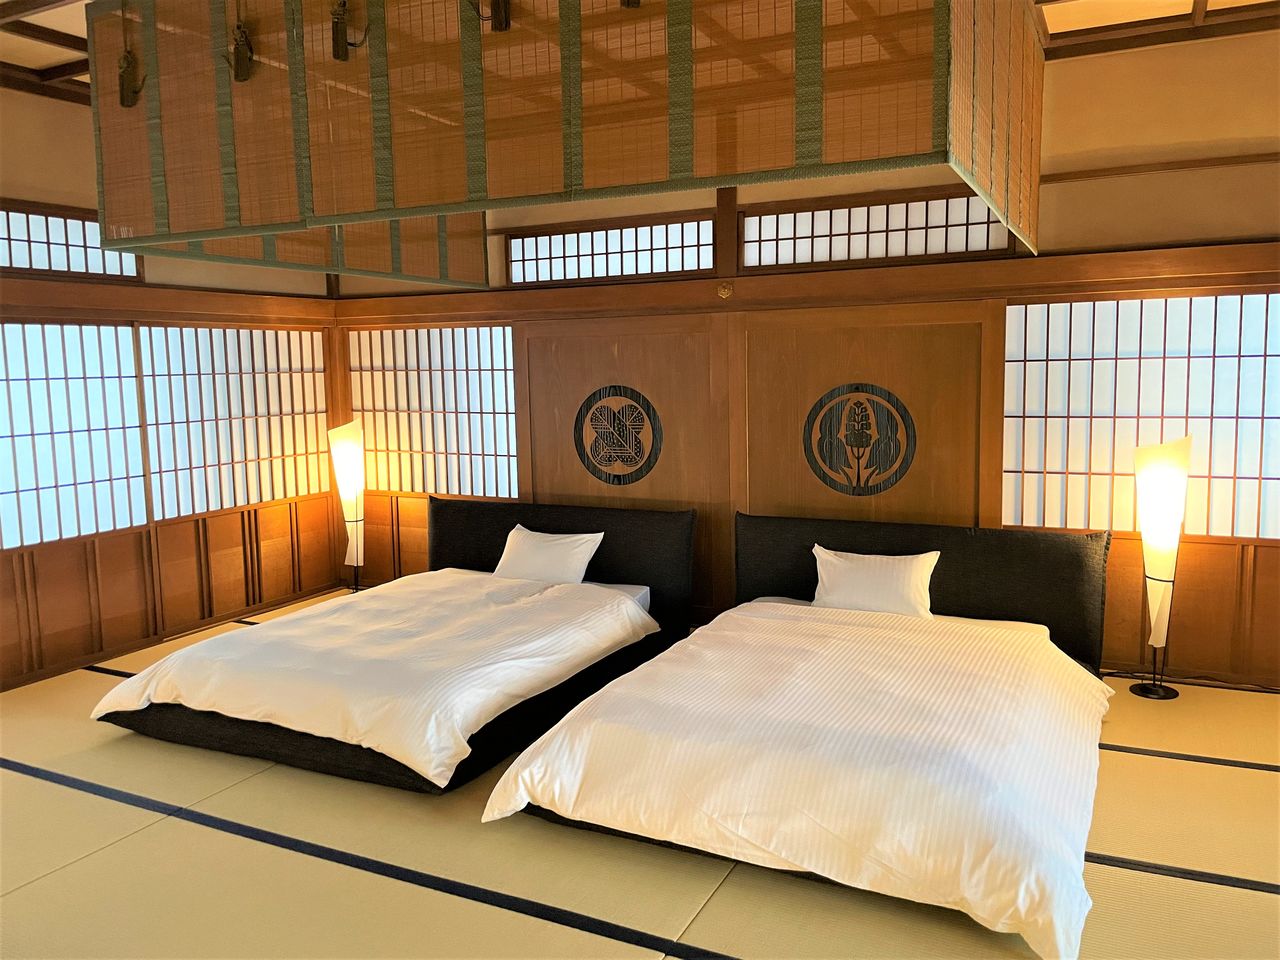 La atalaya Tsukimi-yagura es donde duermen los invitados en el castillo de Fukuyama. Hasta ahora venía alquilándose al público general para la contemplación de los cerezos en flor y la luna. La gran sala (30 metros, aproximadamente) de la primera planta dispone de camas y está decorada con los escudos de las casas Mizuno y Abe del dominio Fukuyama, que erigieron el castillo. (Fotografía: Ayuntamiento de Fukuyama).